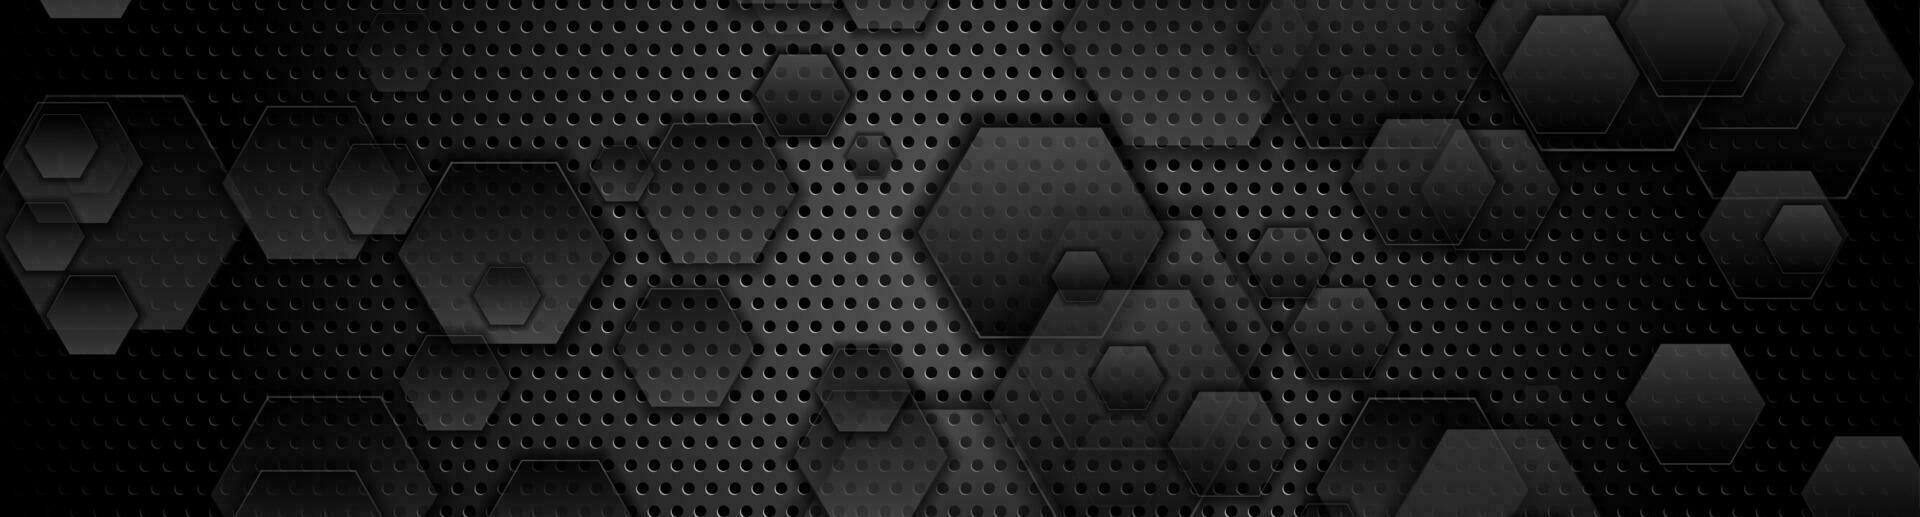 schwarz abstrakt Sechsecke auf dunkel perforiert Hintergrund vektor